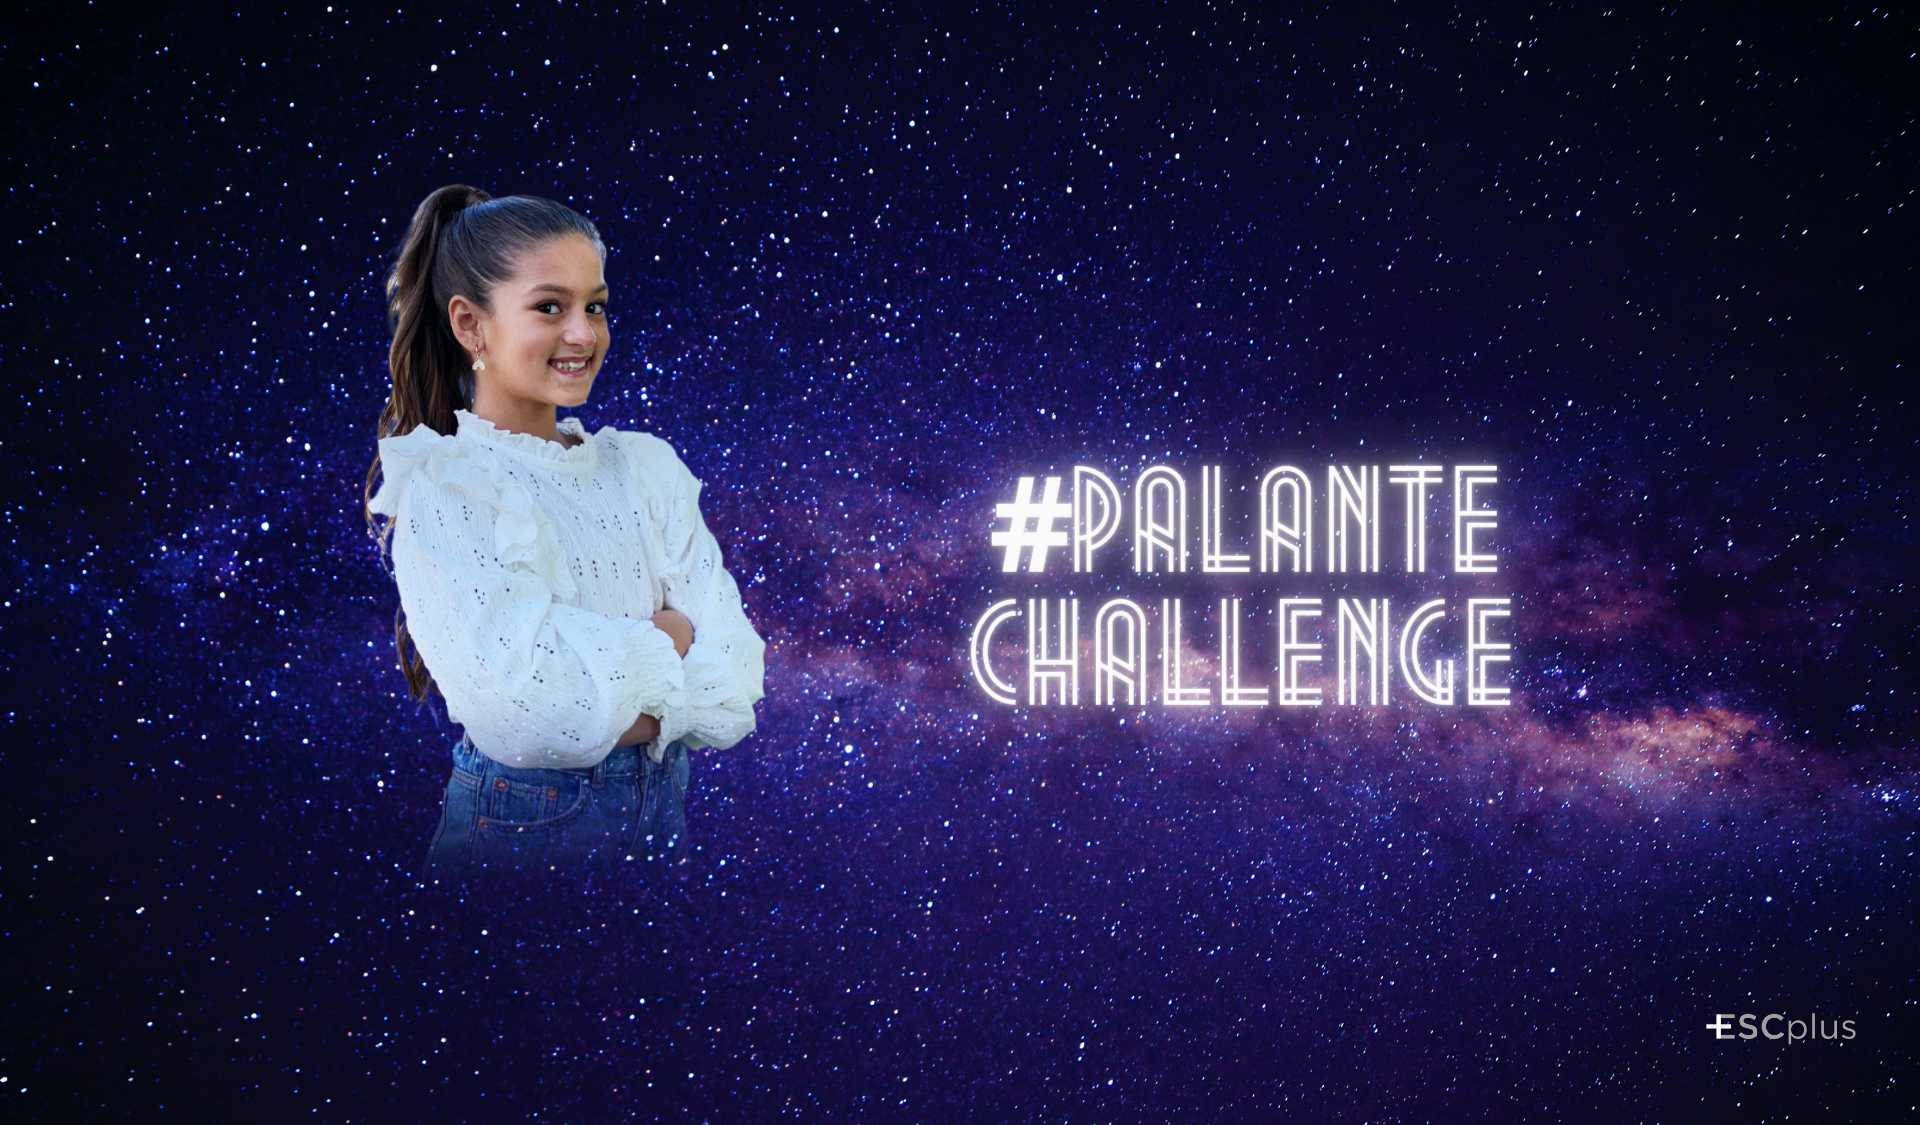 El #PalanteChallenge, la campaña de RTVE para que te aprendas la coreografía de Soleá en Eurovisión Junior